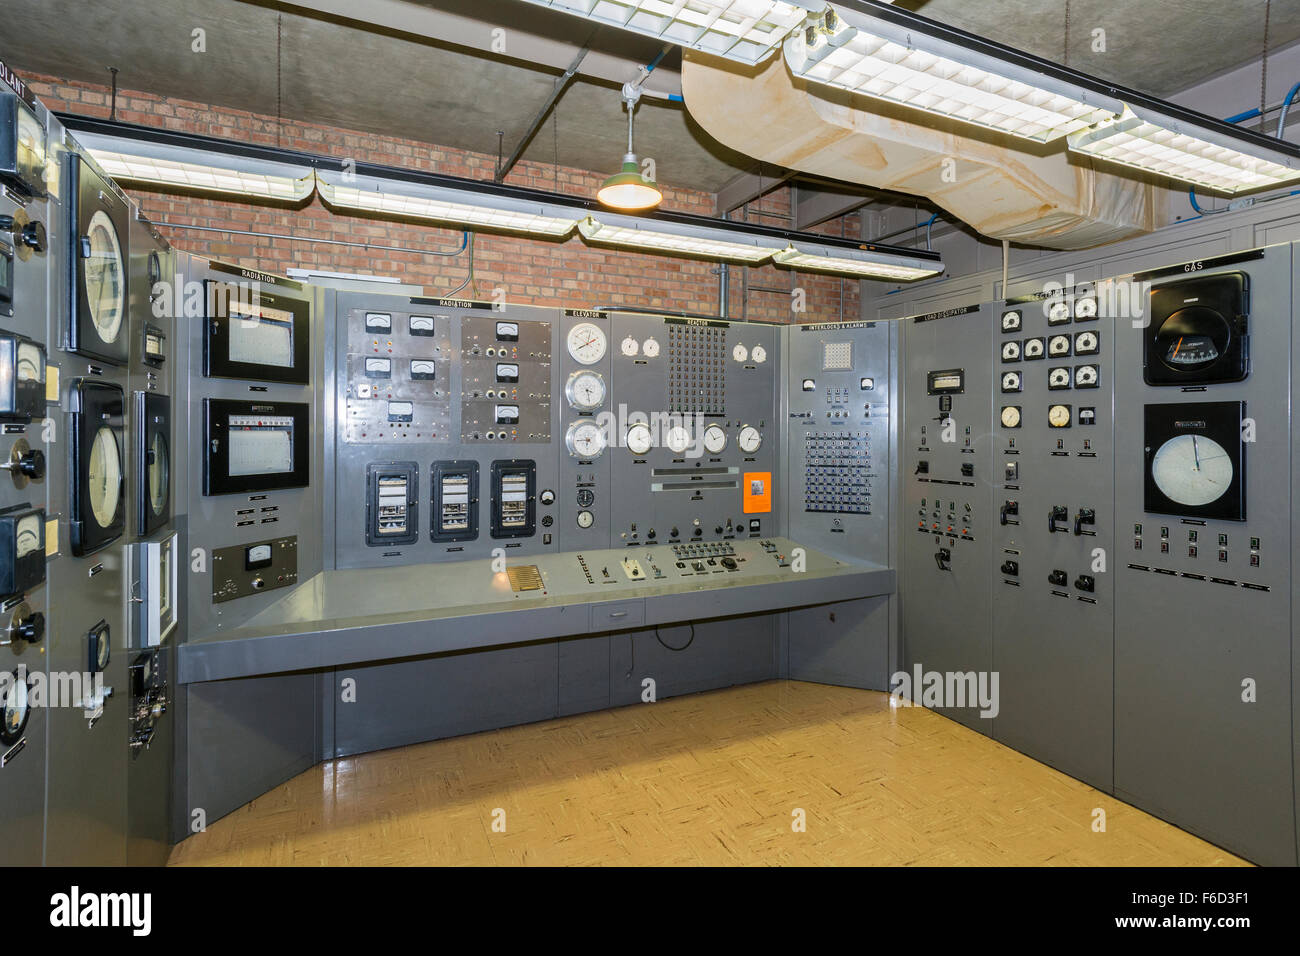 Idaho, sperimentali Reattore Autofertilizzante n. 1 (EBR-1), il mondo il primo impianto ad energia nucleare, azionato 1951-1964, sala di controllo Foto Stock